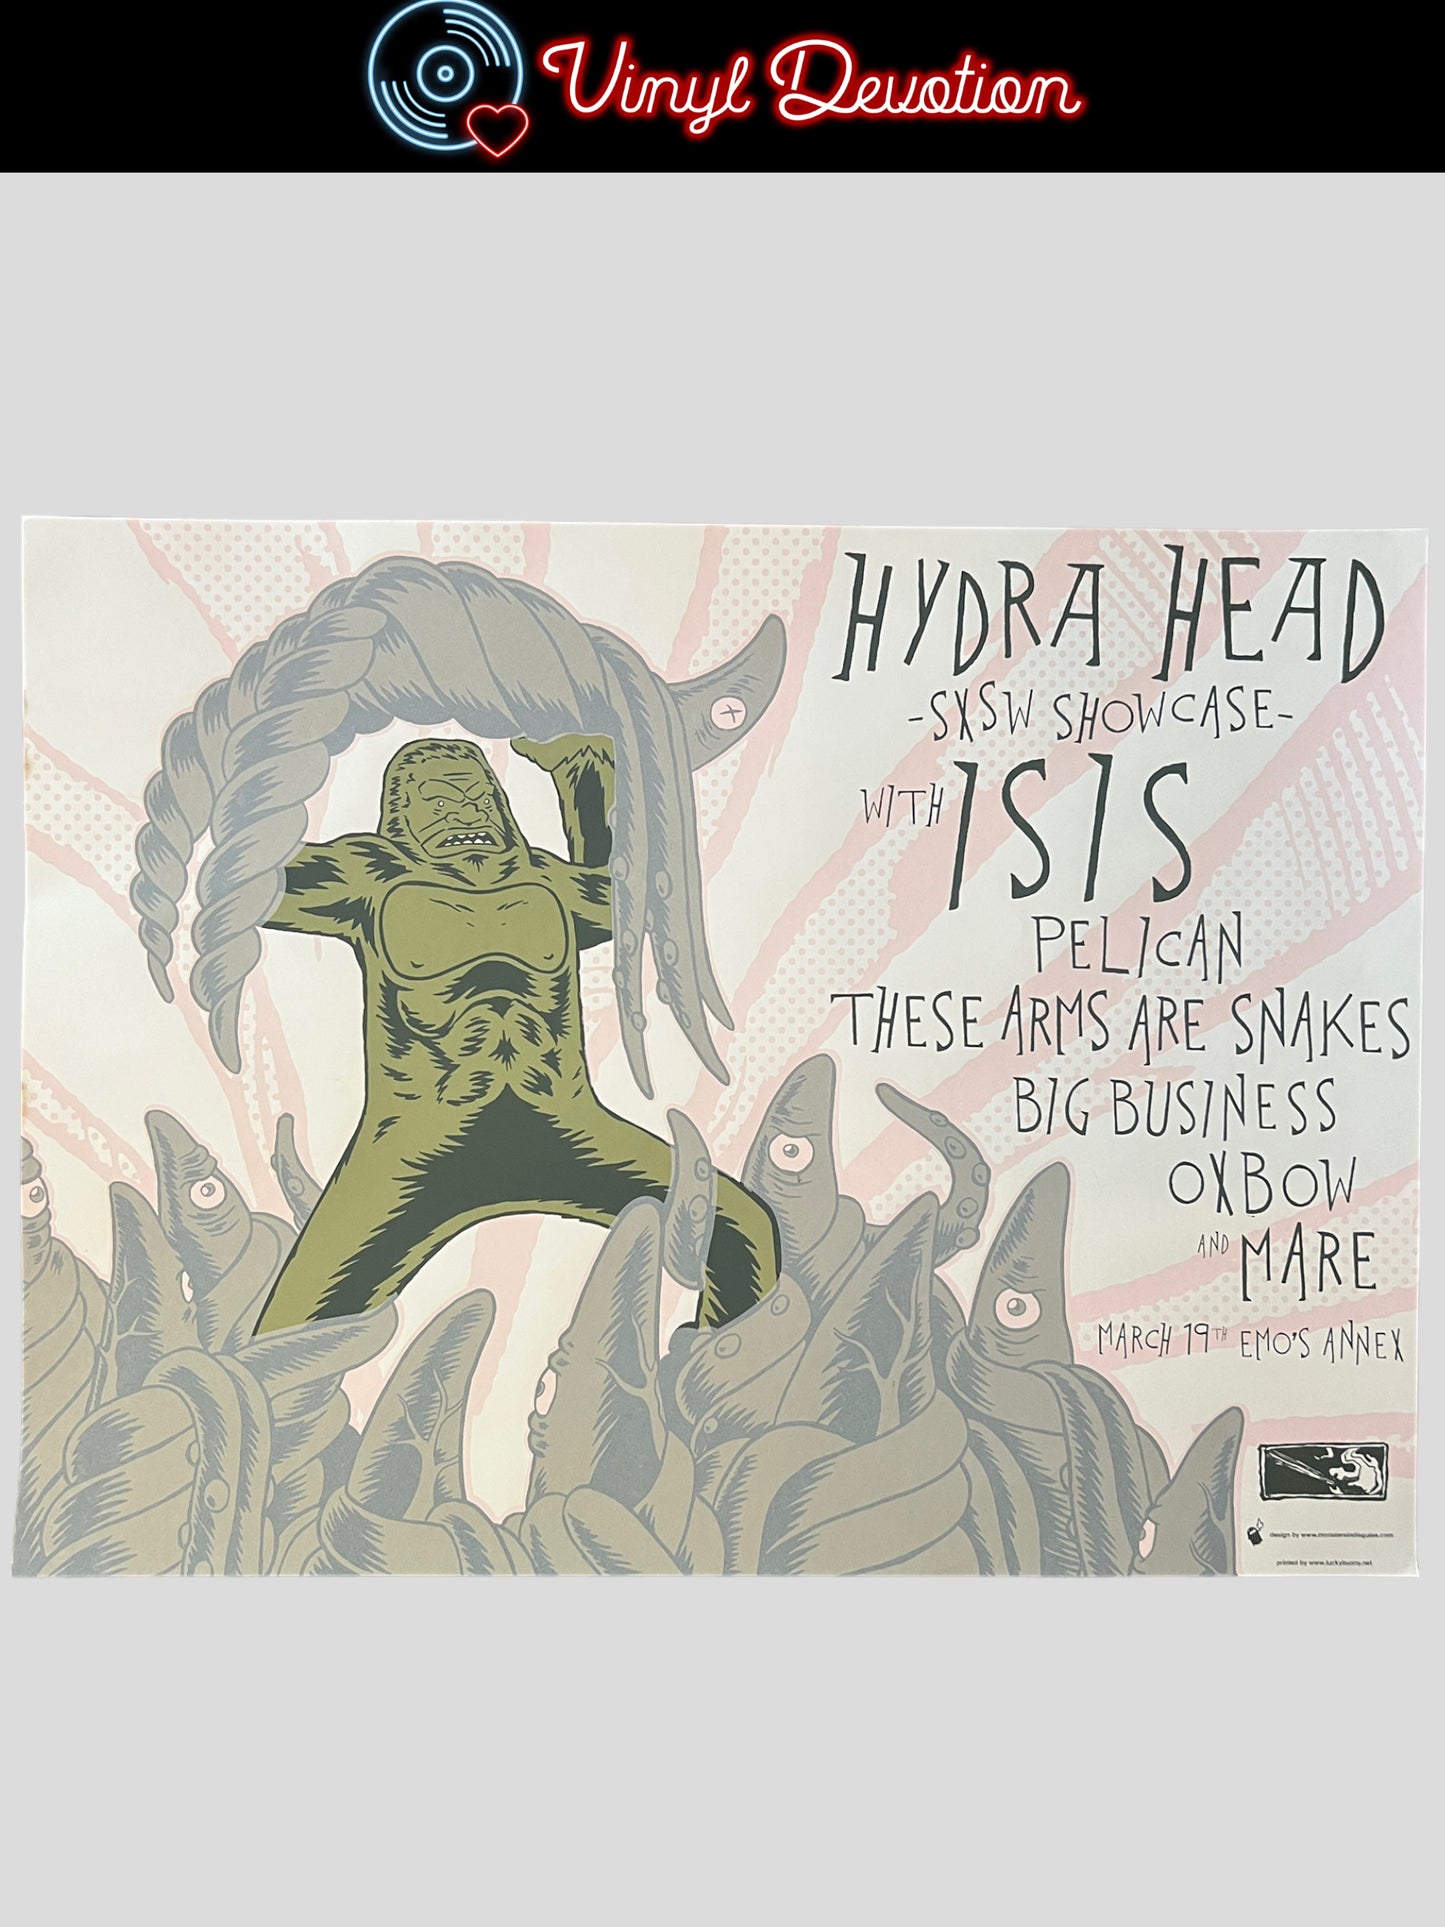 Hydra Head SXSW Showcase Screenprint Poster Isis Pelican Big Business 24 x 18 inches Jeremy Wabiszczewicz